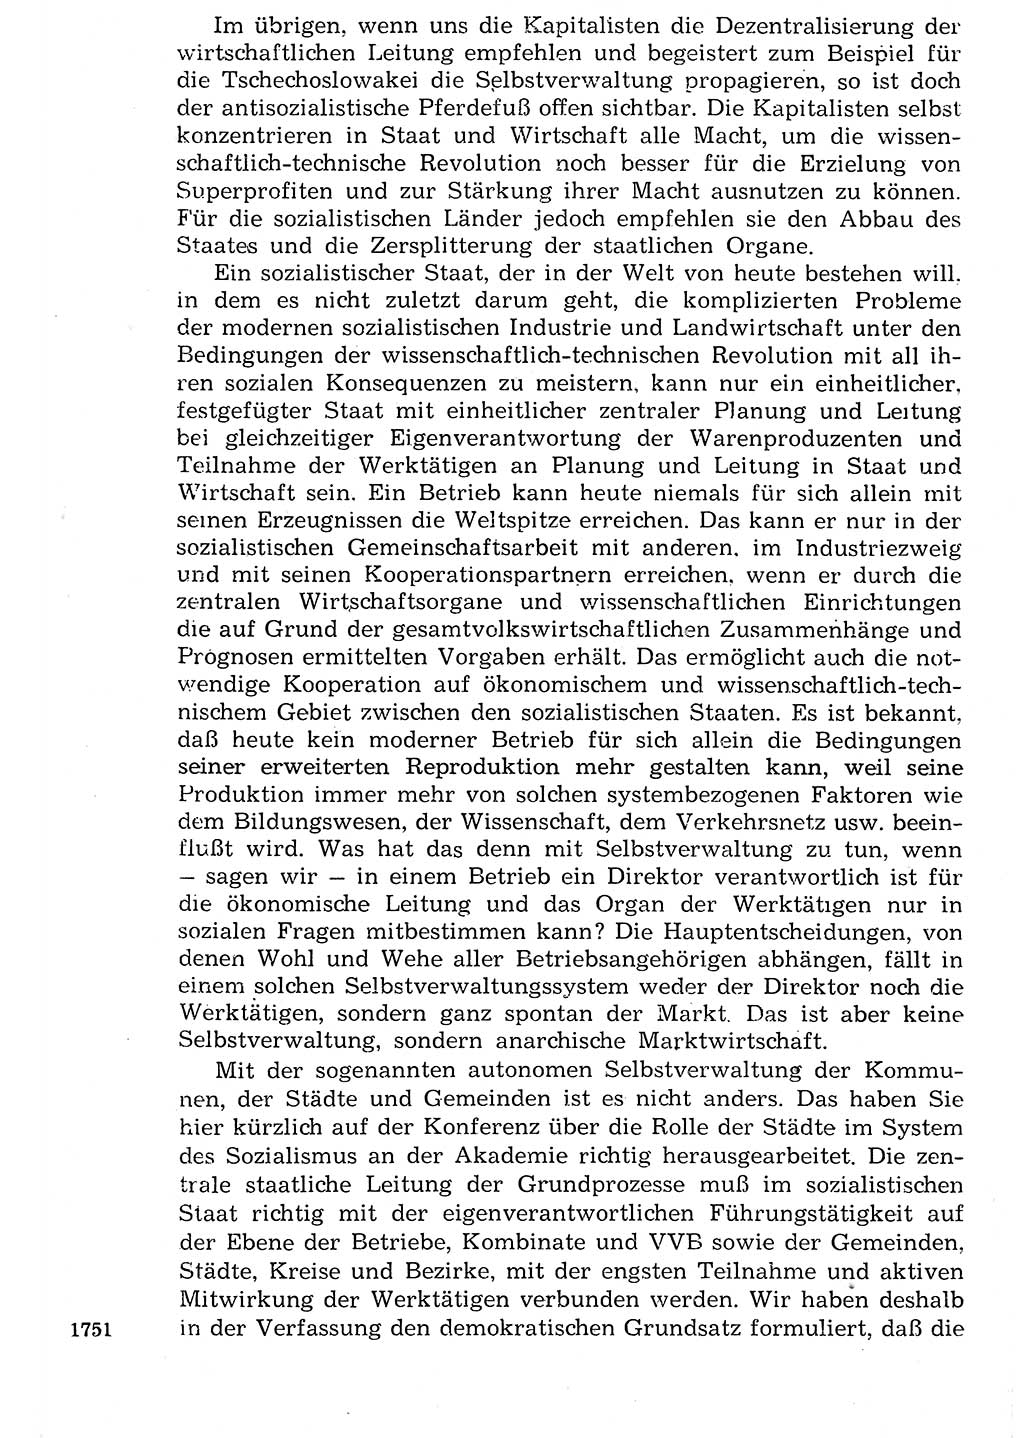 Staat und Recht (StuR), 17. Jahrgang [Deutsche Demokratische Republik (DDR)] 1968, Seite 1751 (StuR DDR 1968, S. 1751)